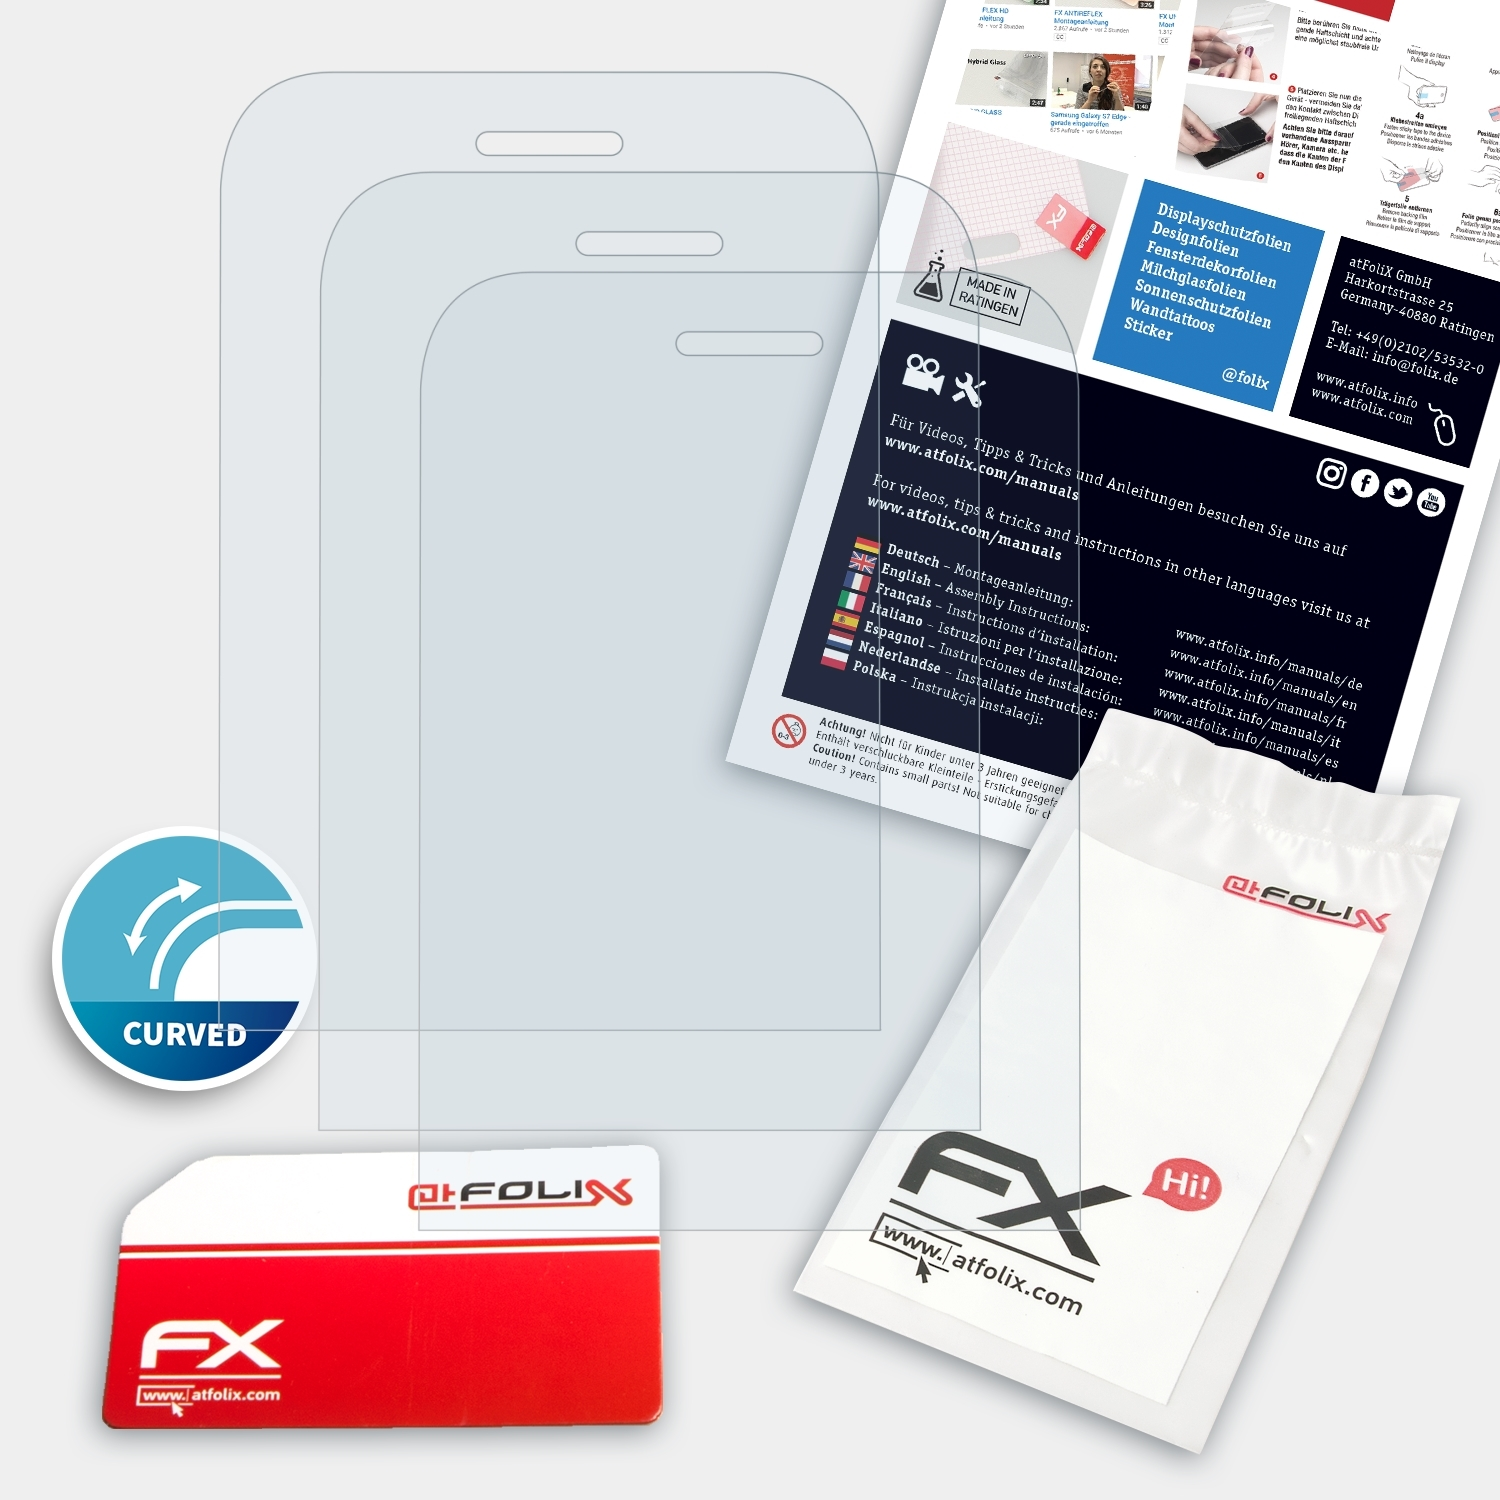 8000 Nokia 4G) FX-ActiFleX 3x ATFOLIX Displayschutz(für